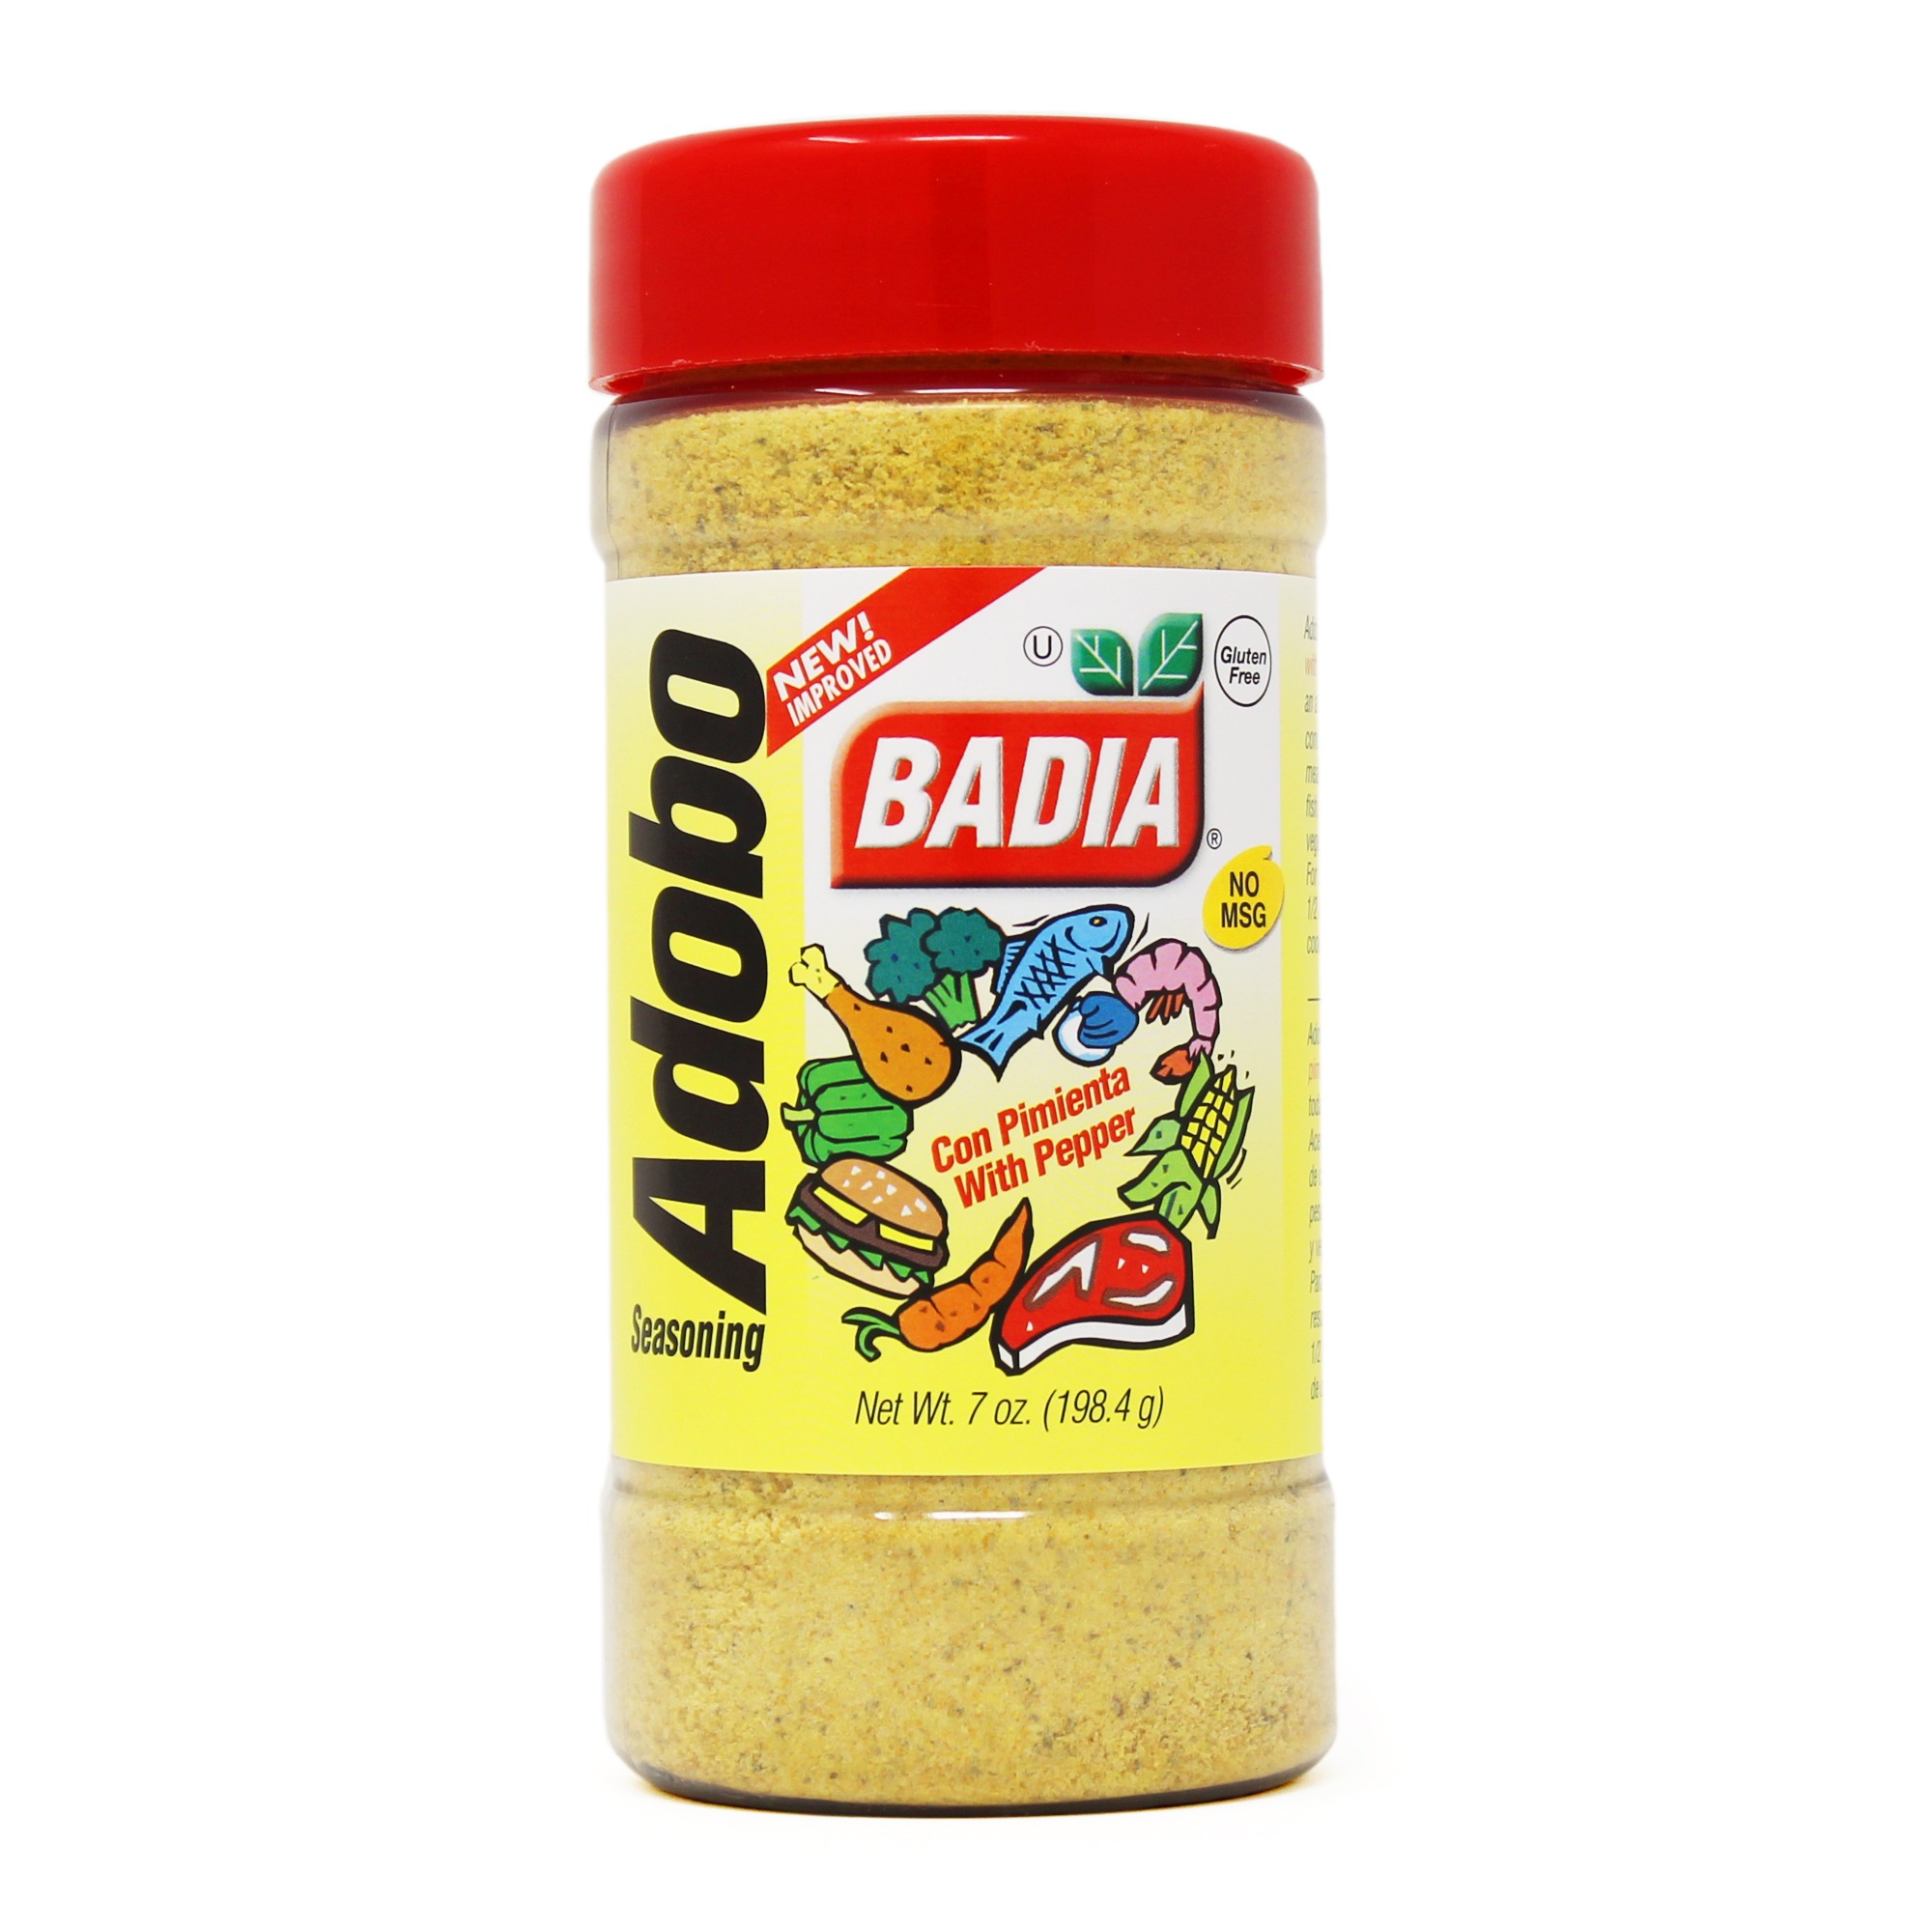 💛💚🧡 Badia's Citrus Pepper family is - Badia Spices, Inc.